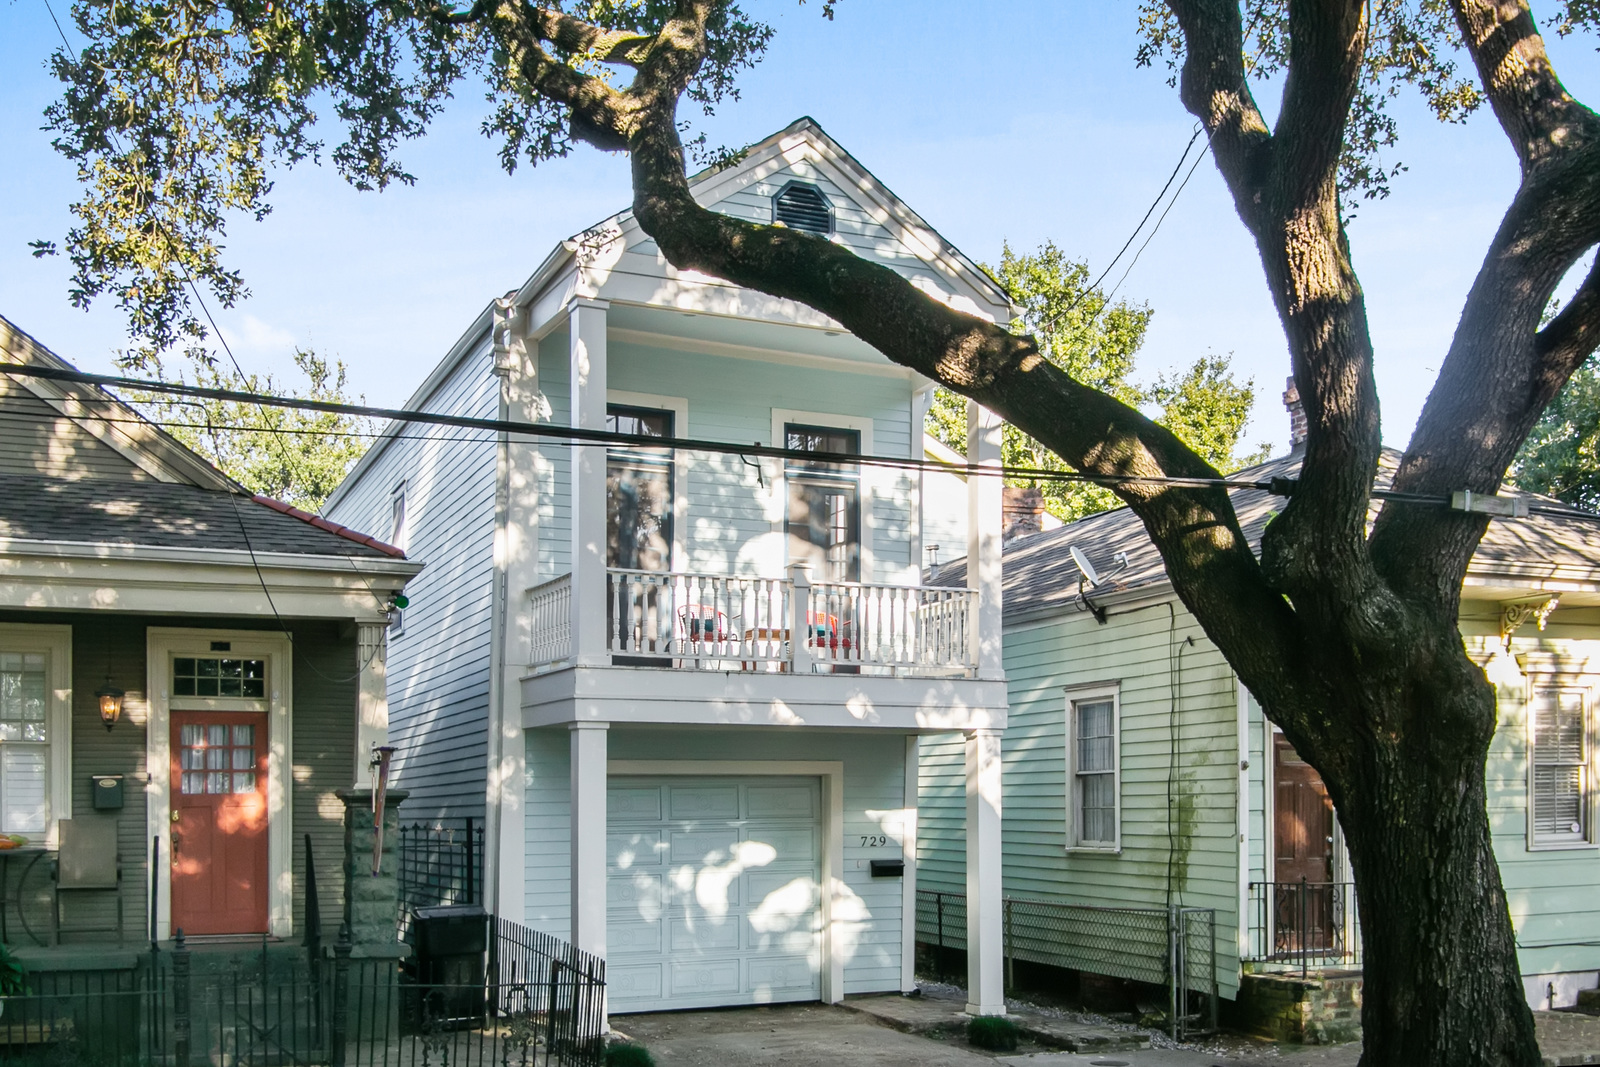 Property Highlight – 729 Louisiana Avenue